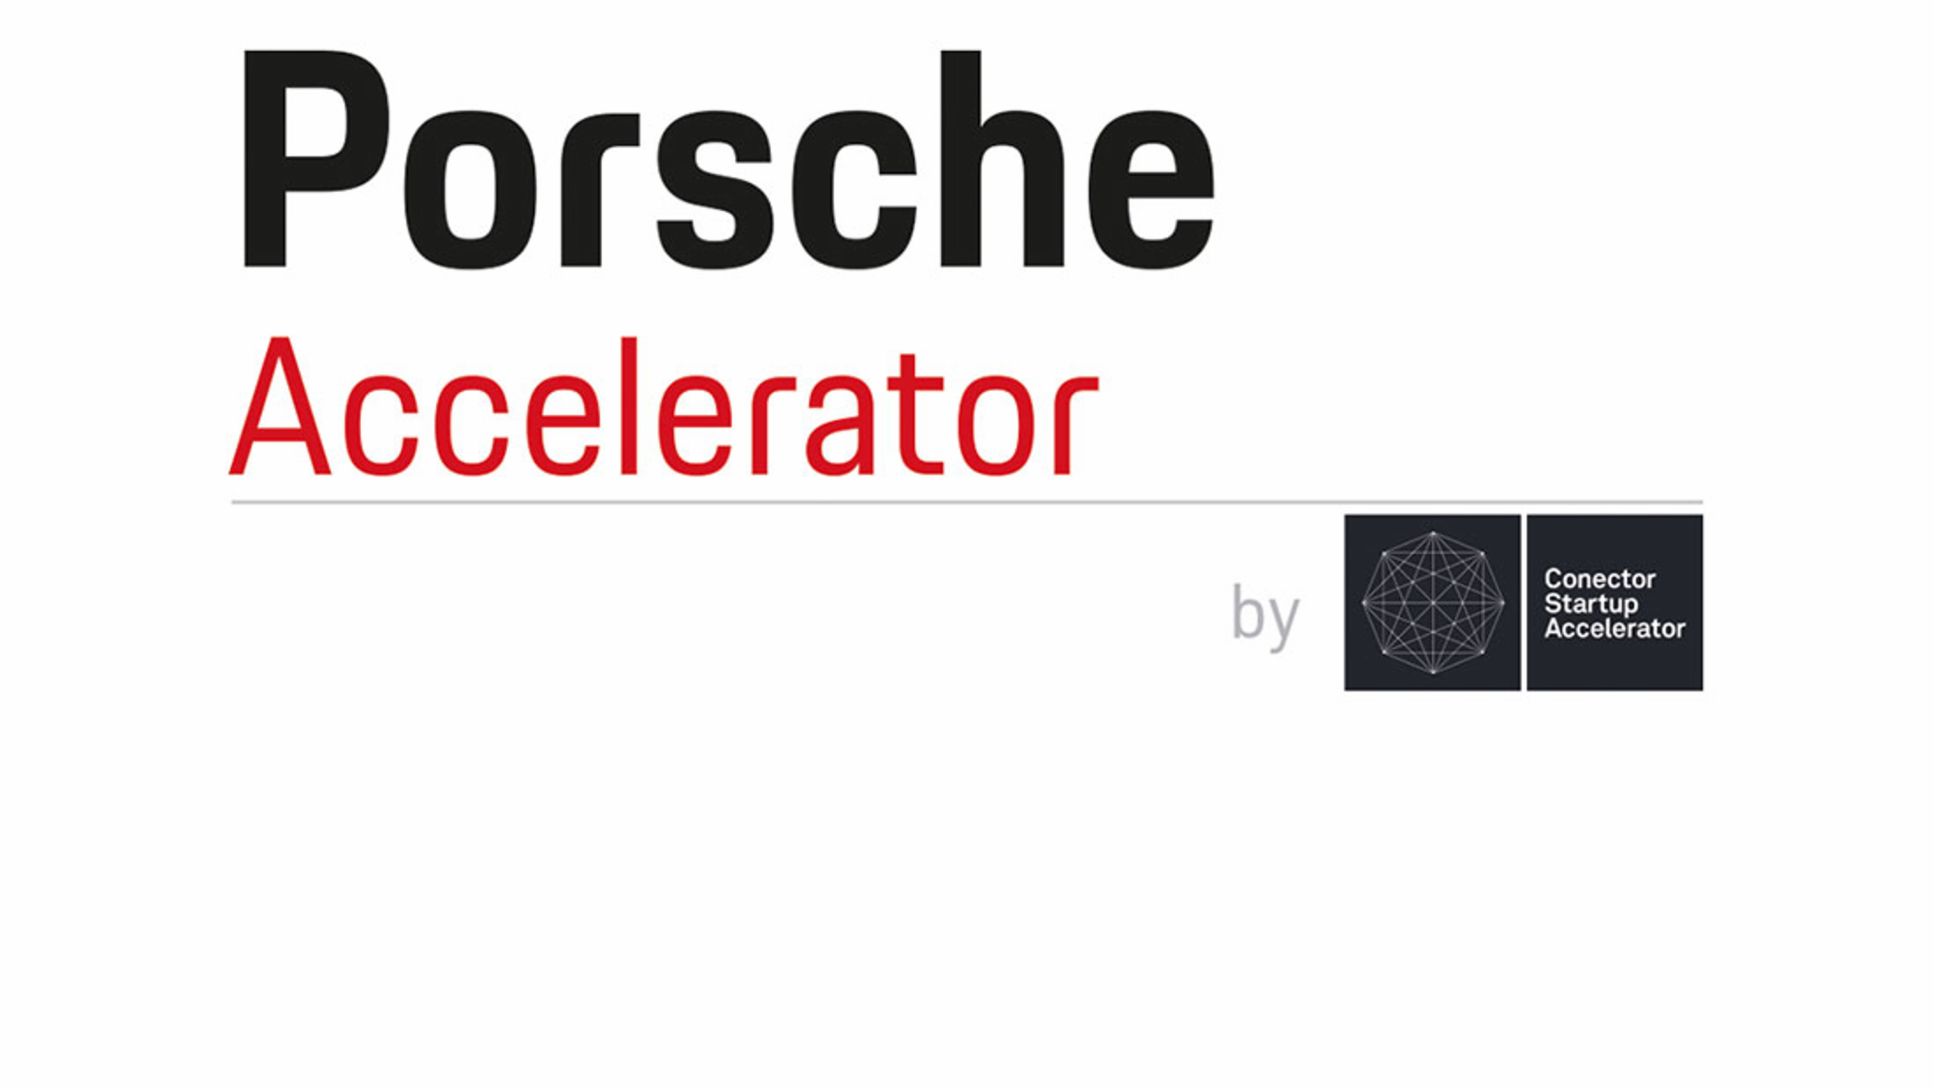 Porsche Accelerator by Conector, 2017, Porsche AG